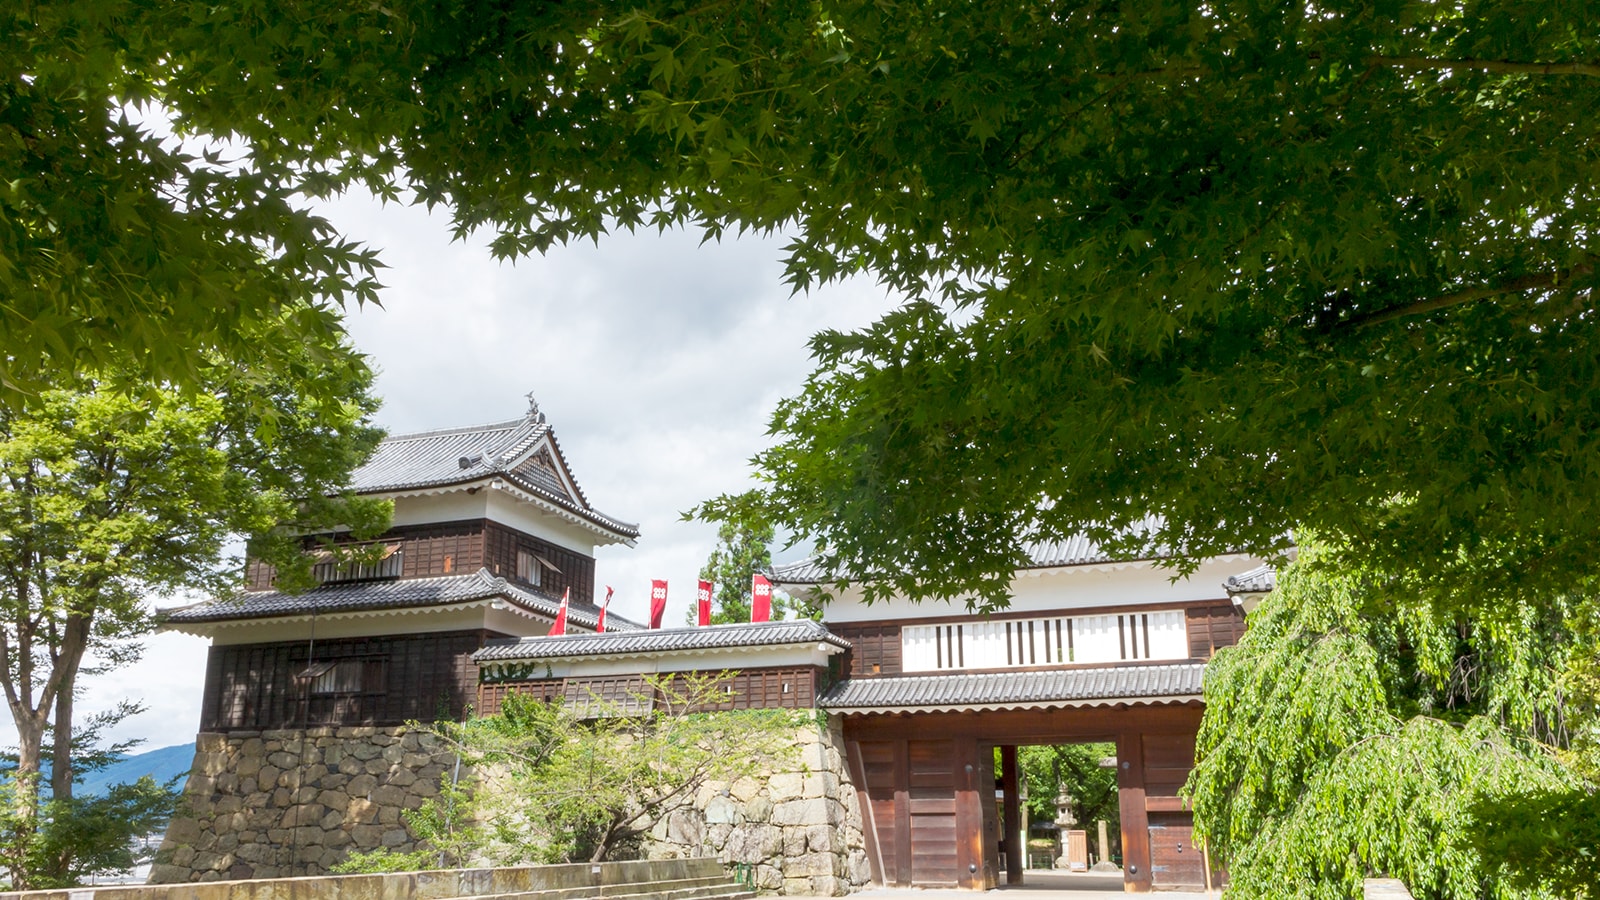 新緑に囲まれた上田城も美しい - - 長野県の観光、撮影スポット- -